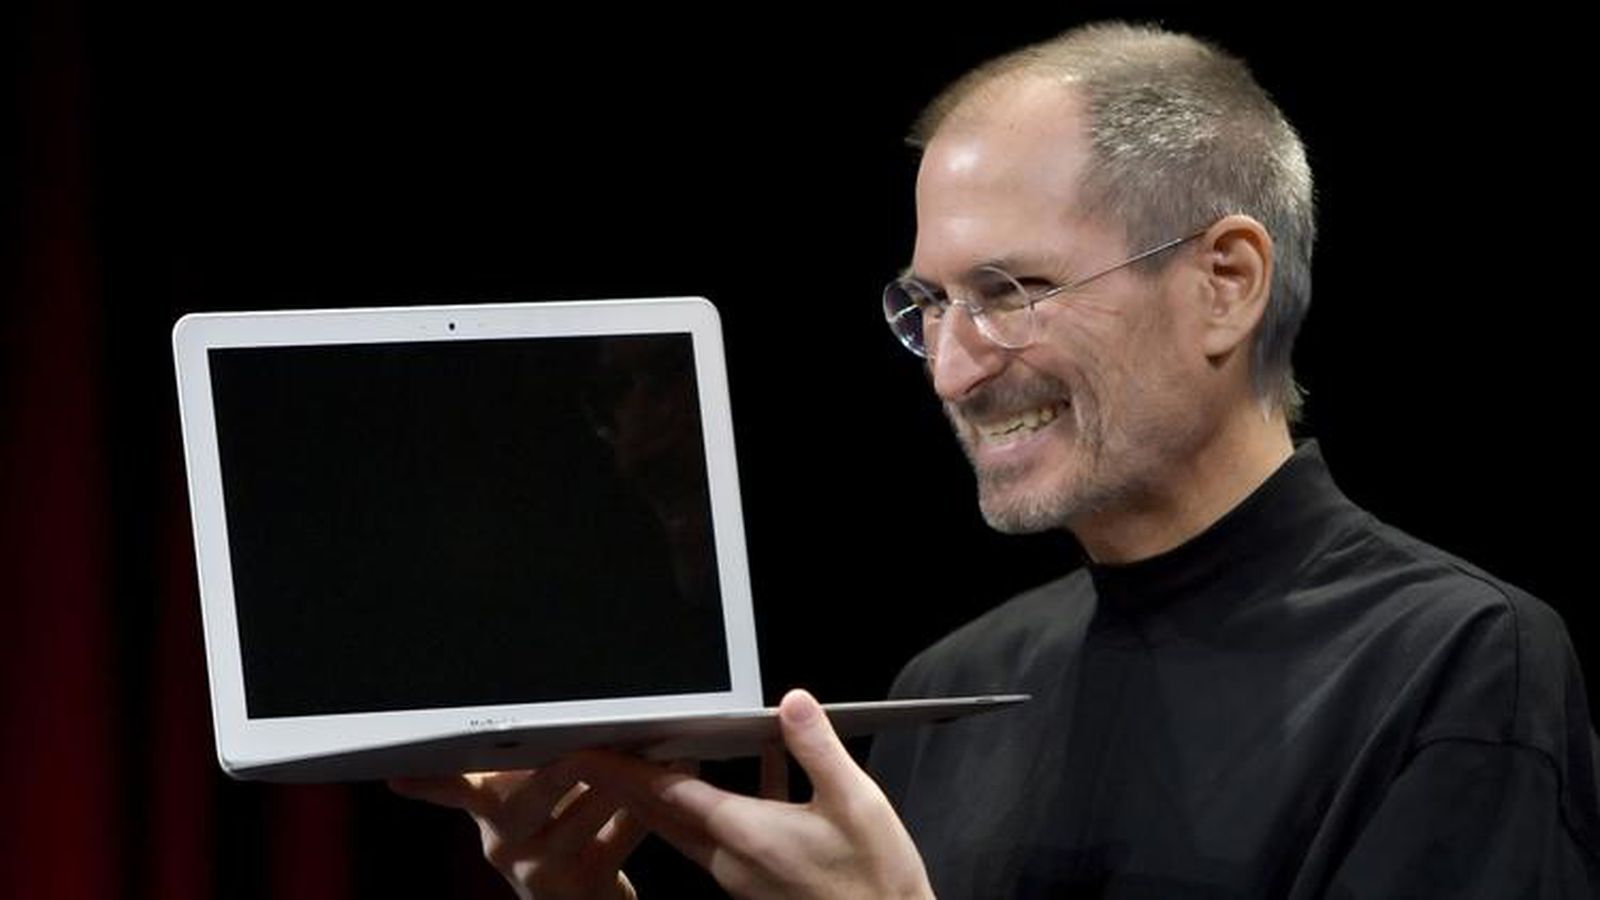 Steve Jobs: "What an asshole"